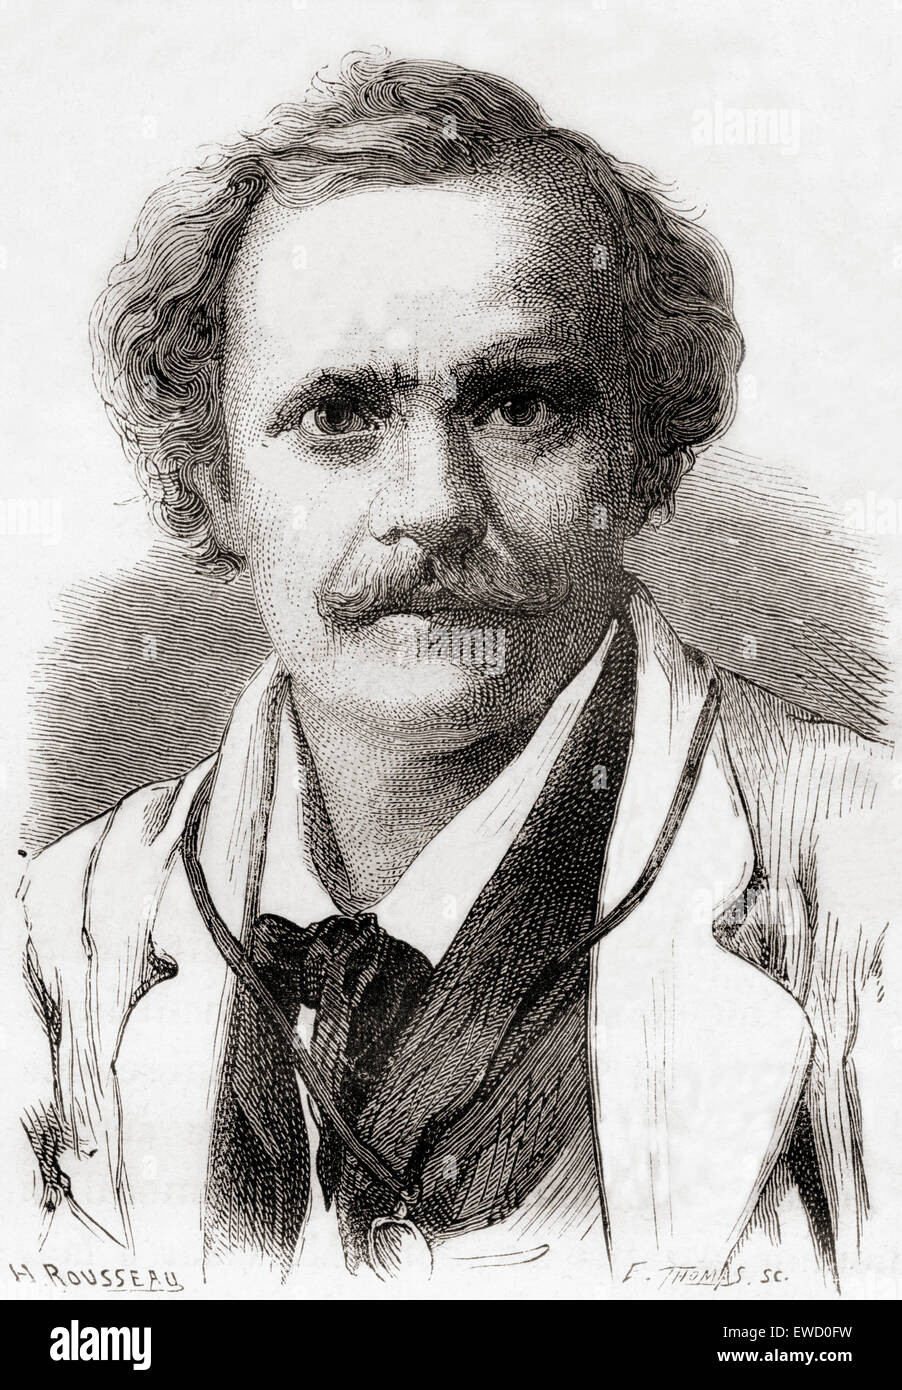 Nadar era lo pseudonimo di Gaspard-Félix Tournachon , 1820 - 1910. Fotografo francese, caricaturista, giornalista, scrittore e balloonist. Foto Stock